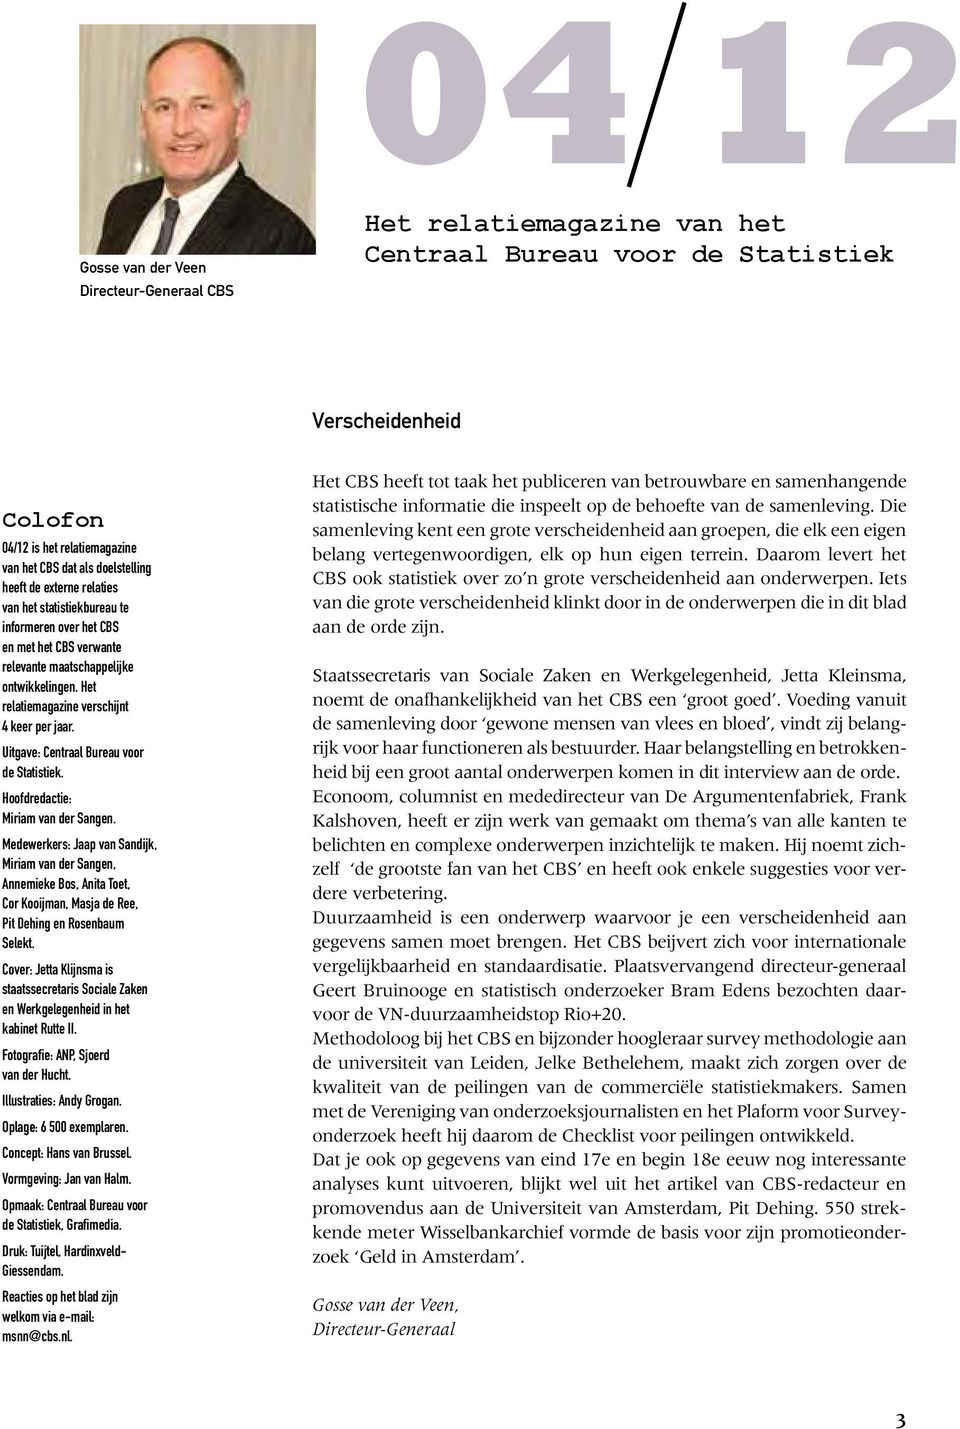 Uitgave: Centraal Bureau voor de Statistiek. Hoofdredactie: Miriam van der Sangen.